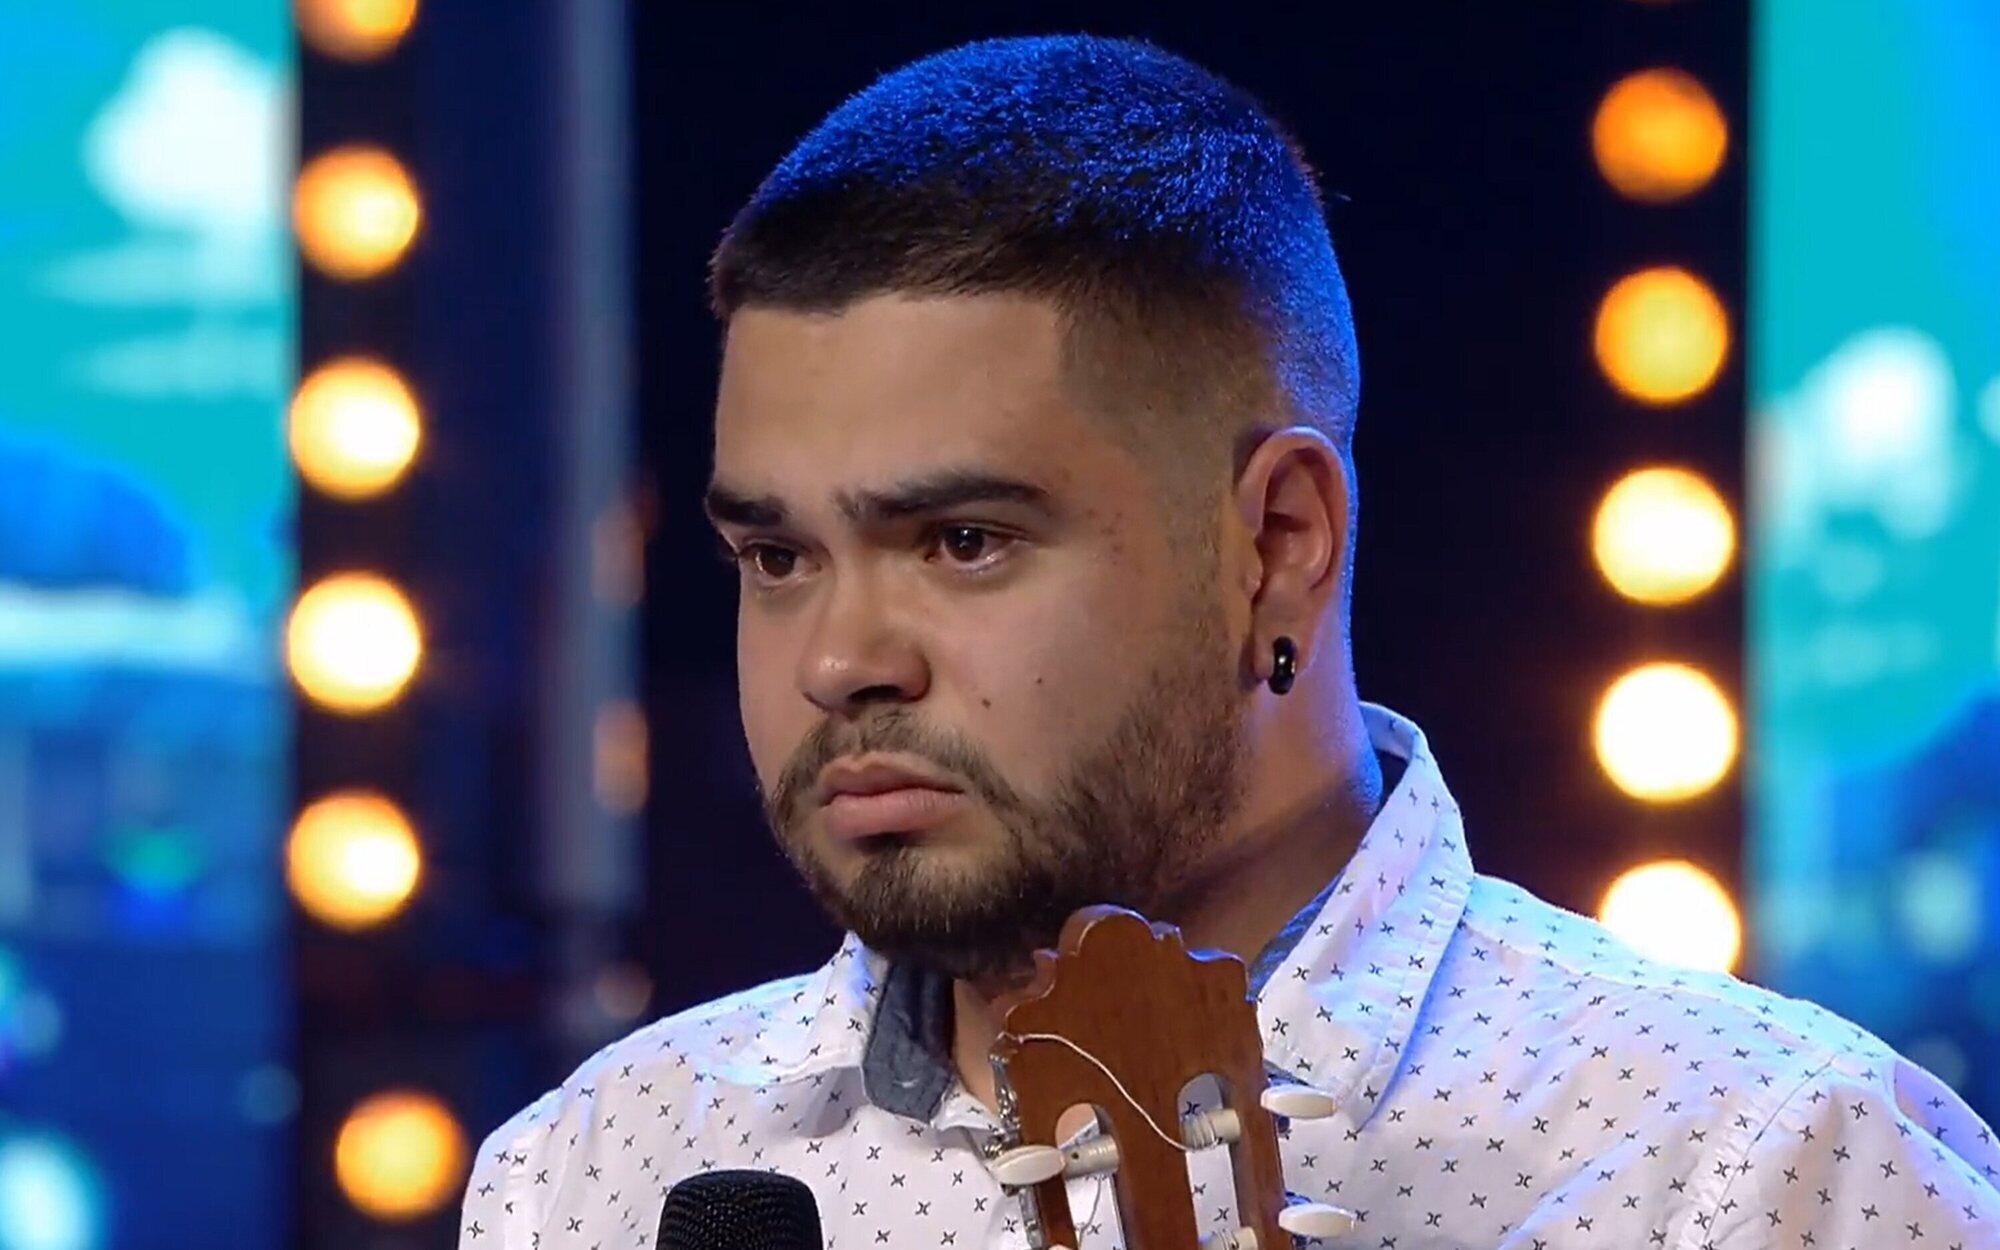 La dolorosa denuncia de un cantante de La Palma en 'Got Talent': "Se apagó el volcán y nos olvidaron"